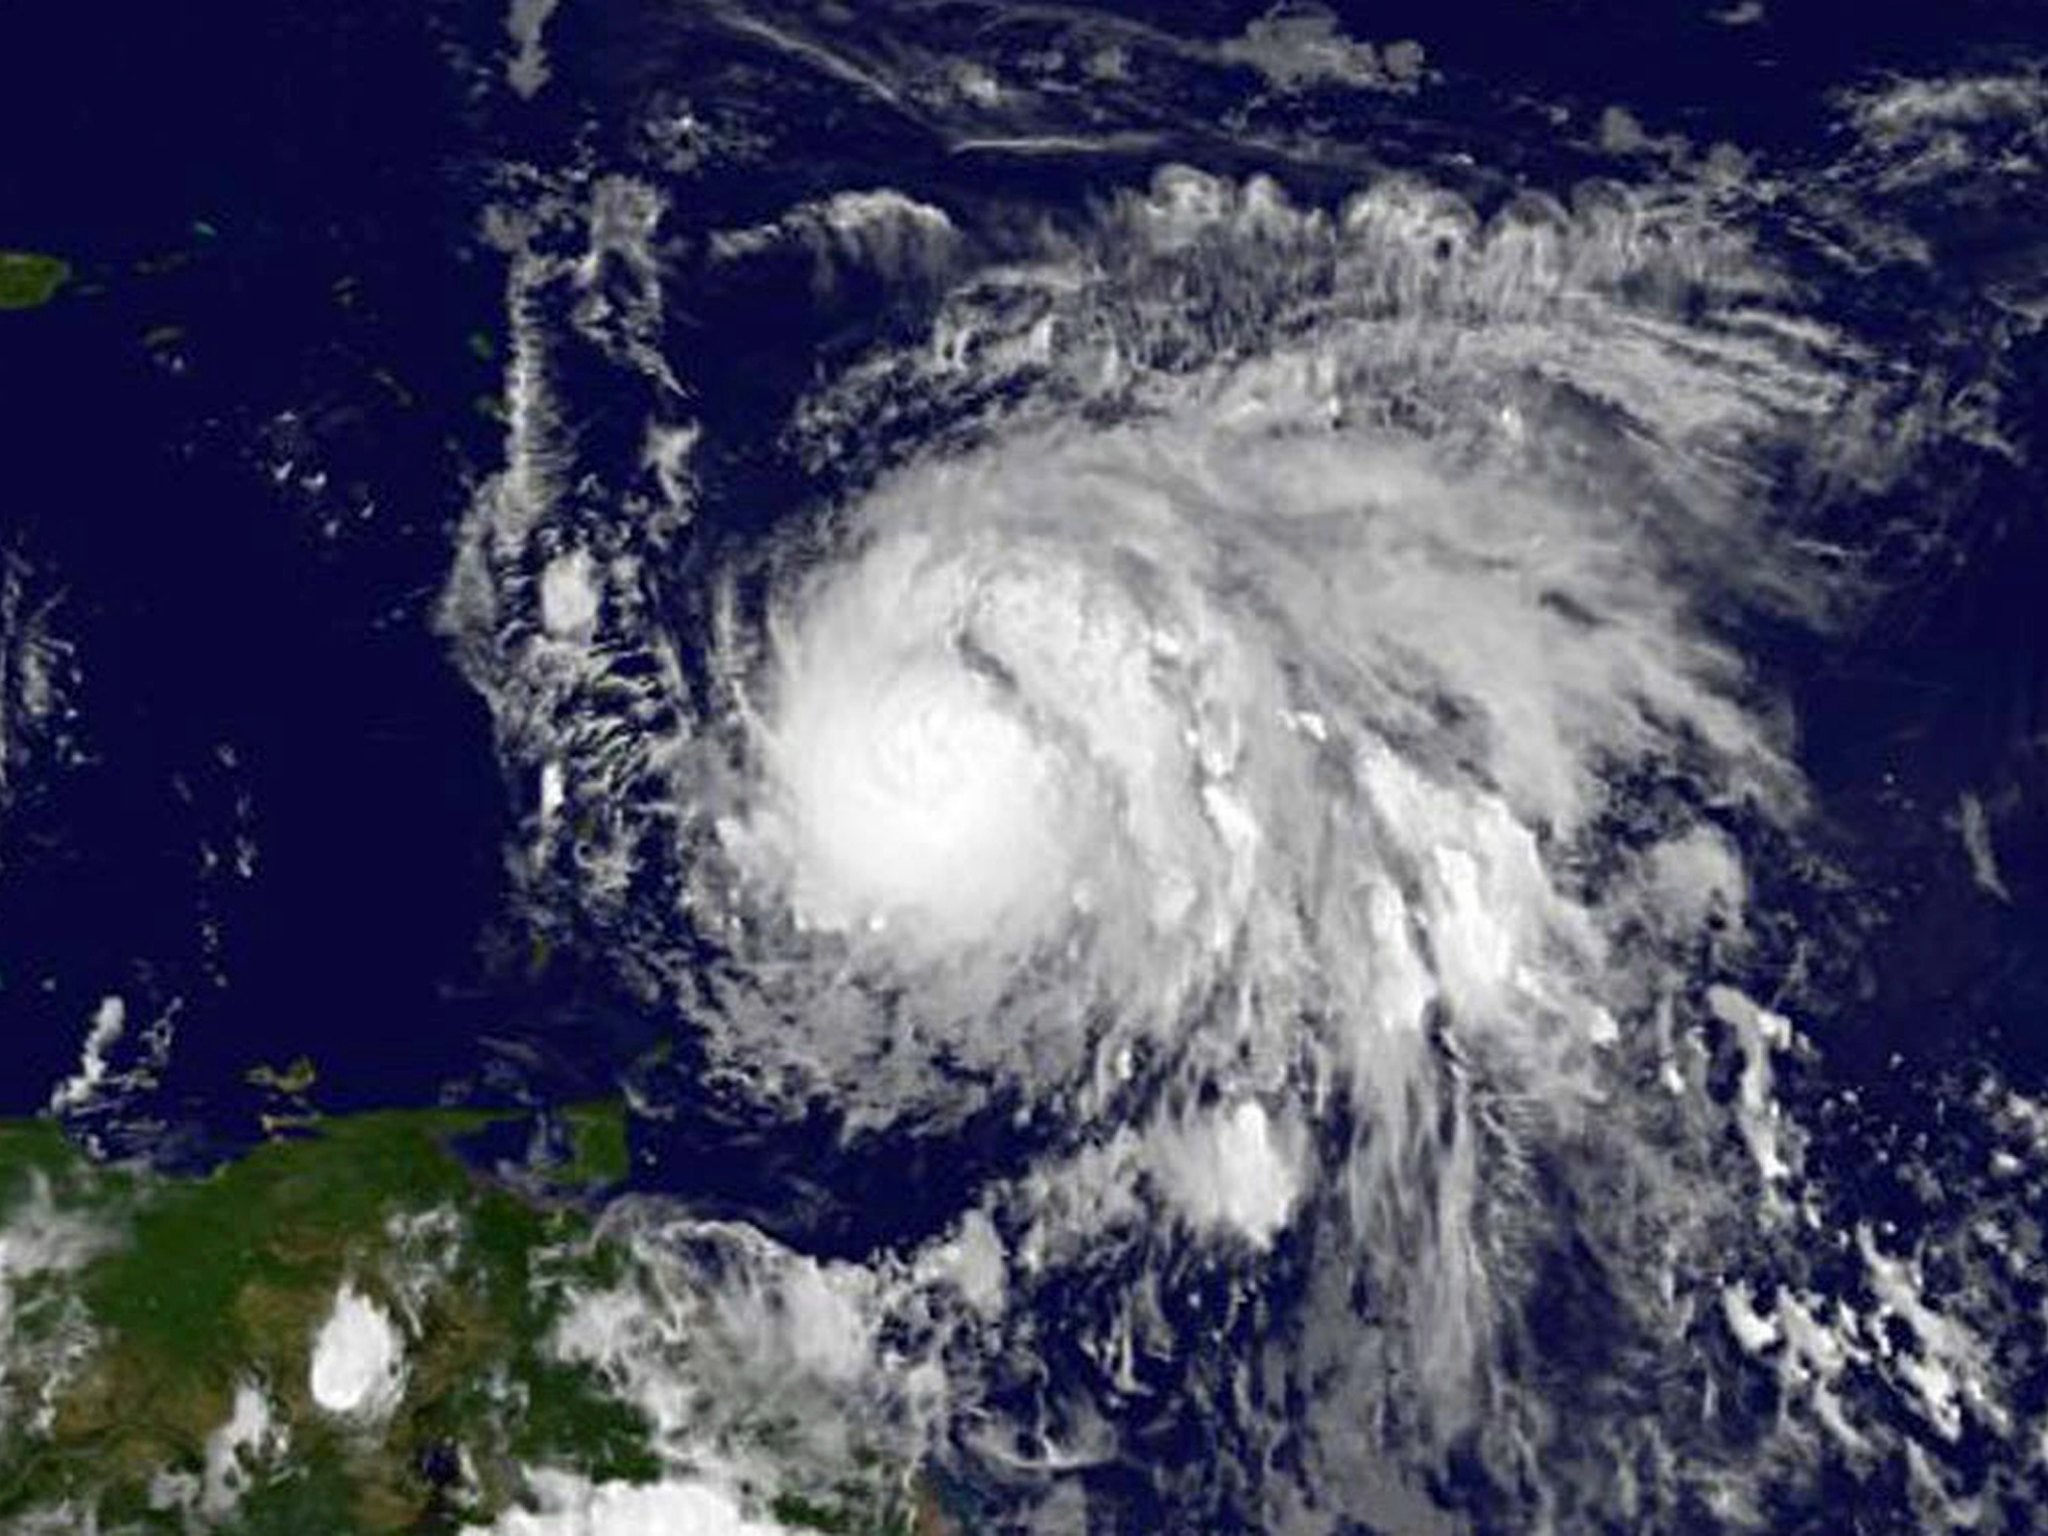 Hurricane maria. Уроганына Антильских островов. Шкала ураганов Саффира - Симпсона. Названия ураганов женские.